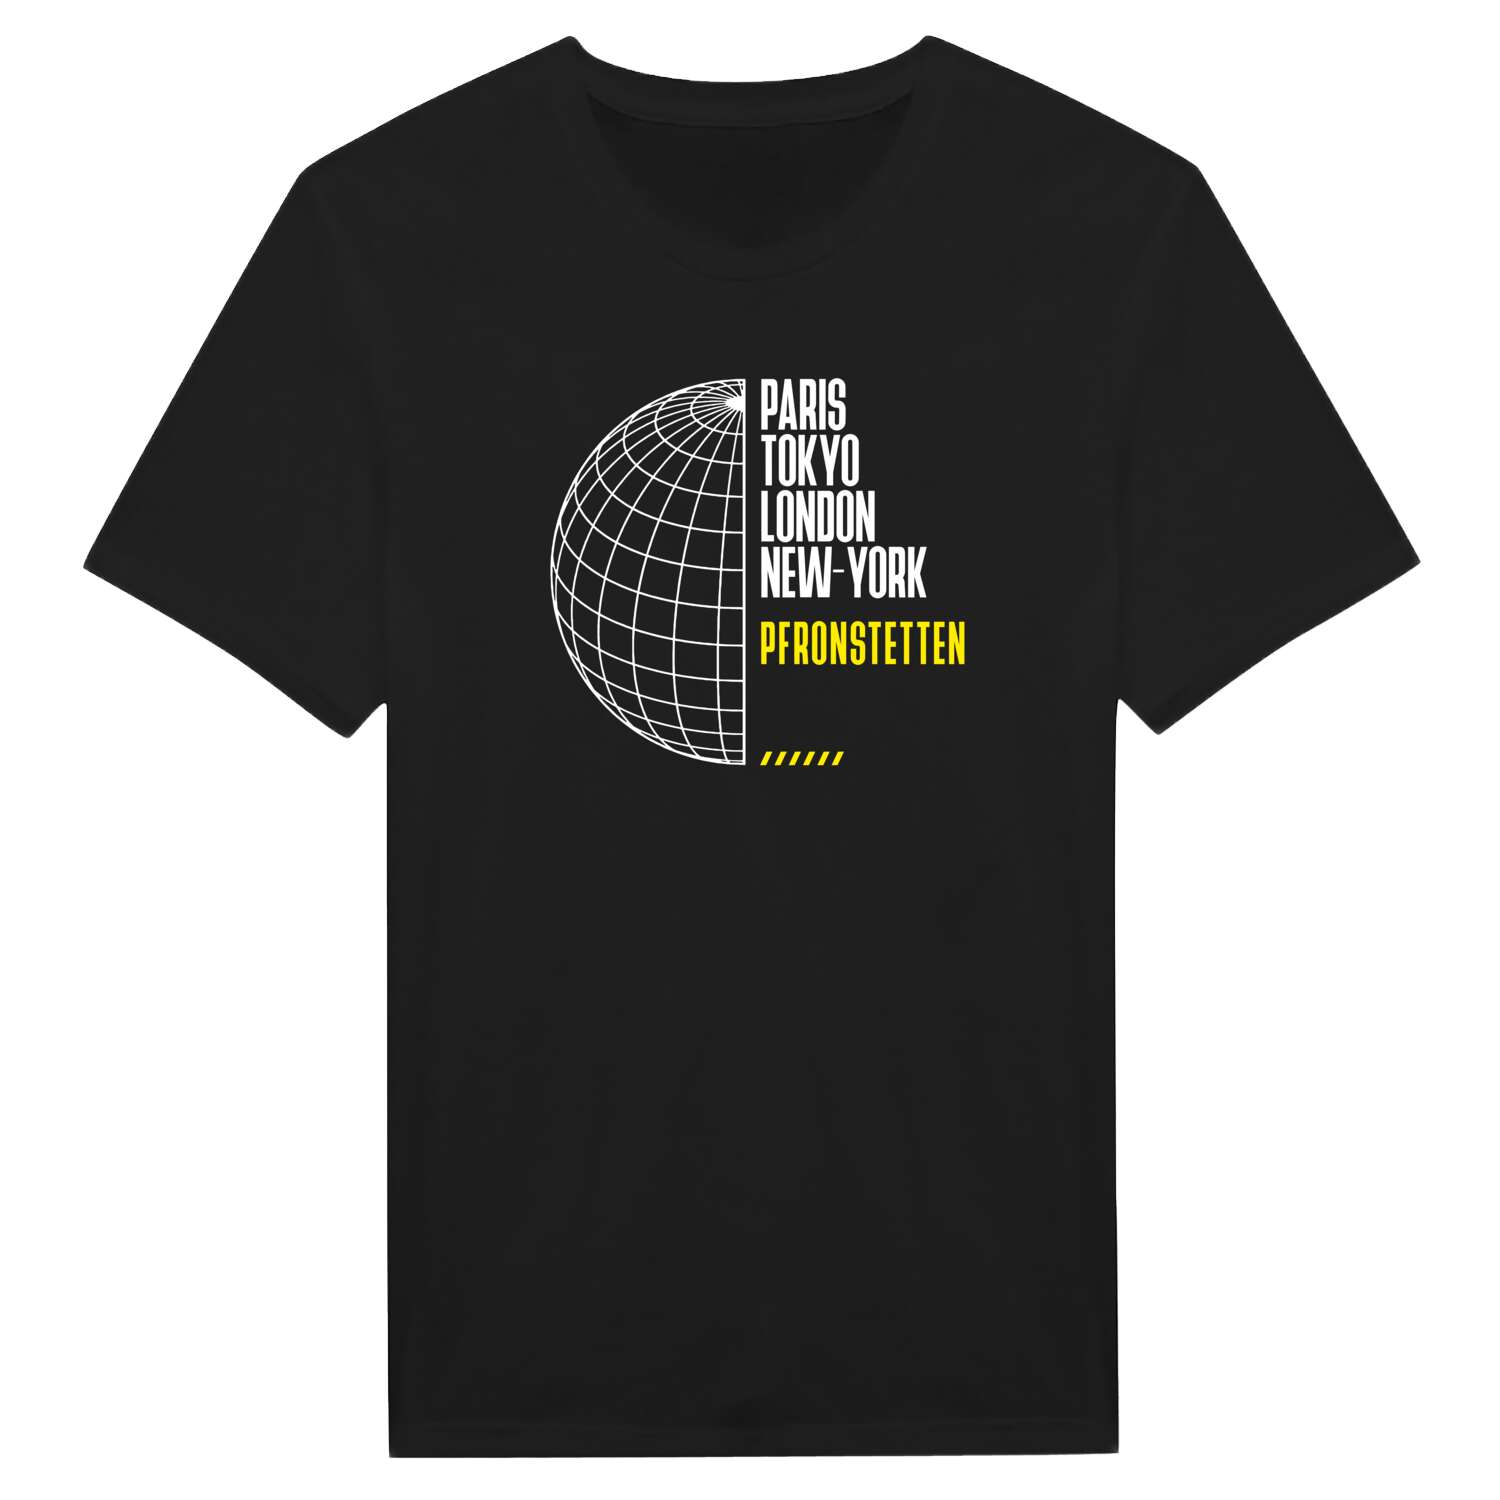 Pfronstetten T-Shirt »Paris Tokyo London«